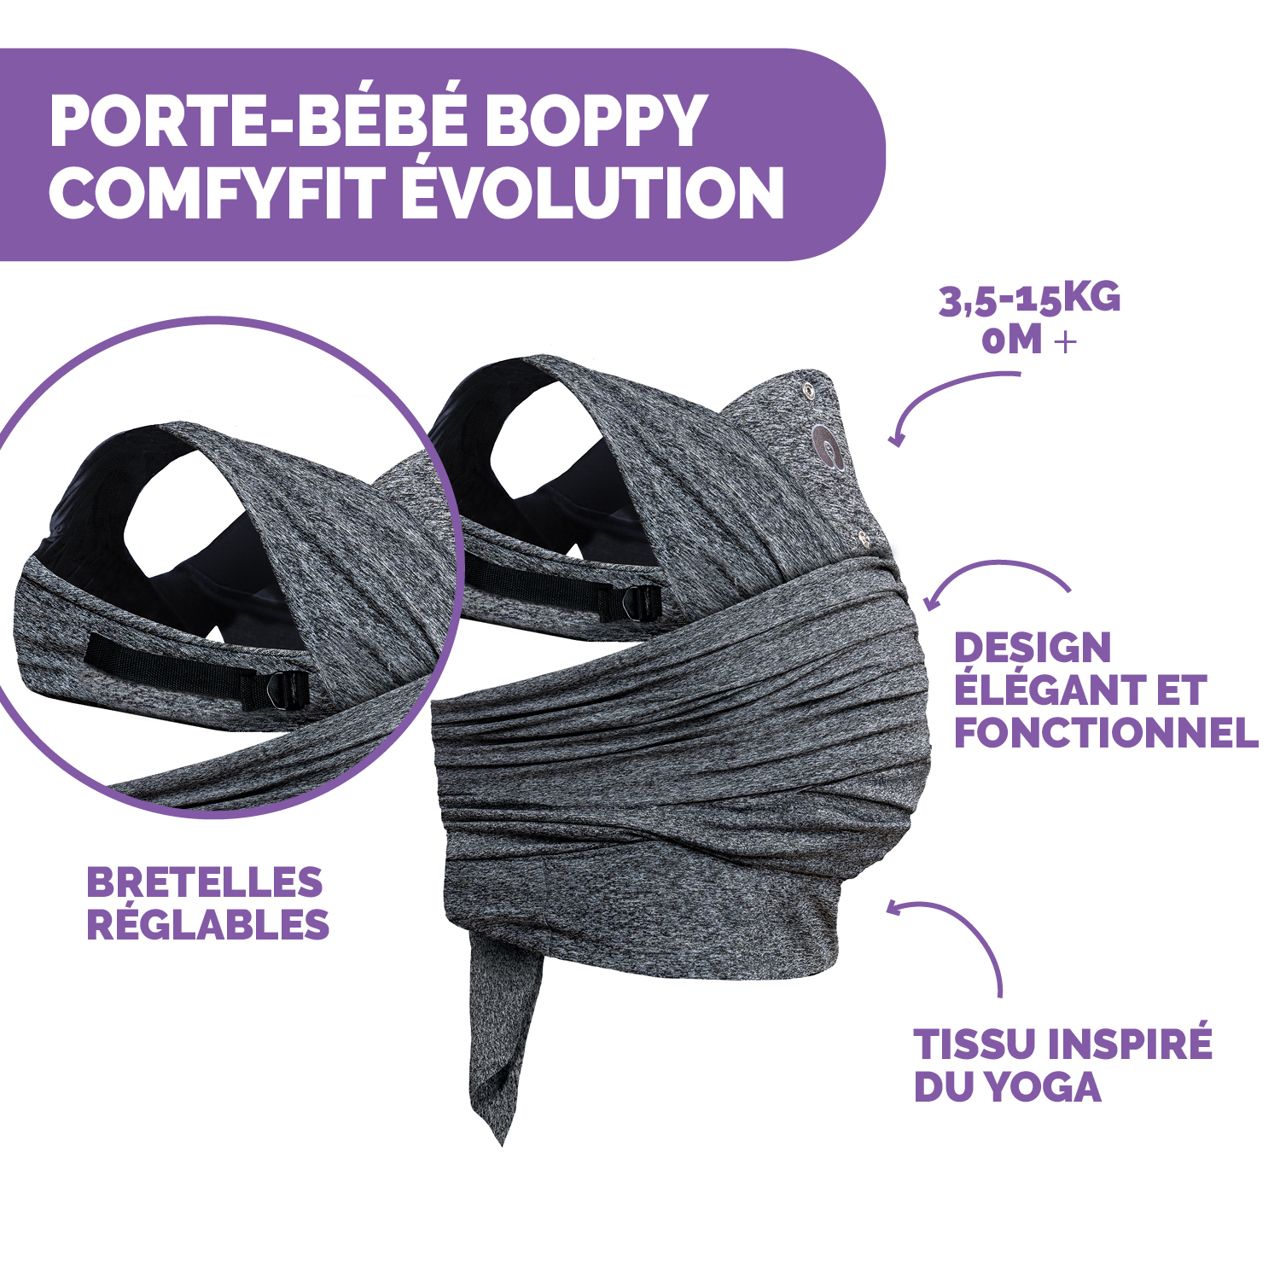 Porte-bébé Boppy Comfyfit Evolution image number 1